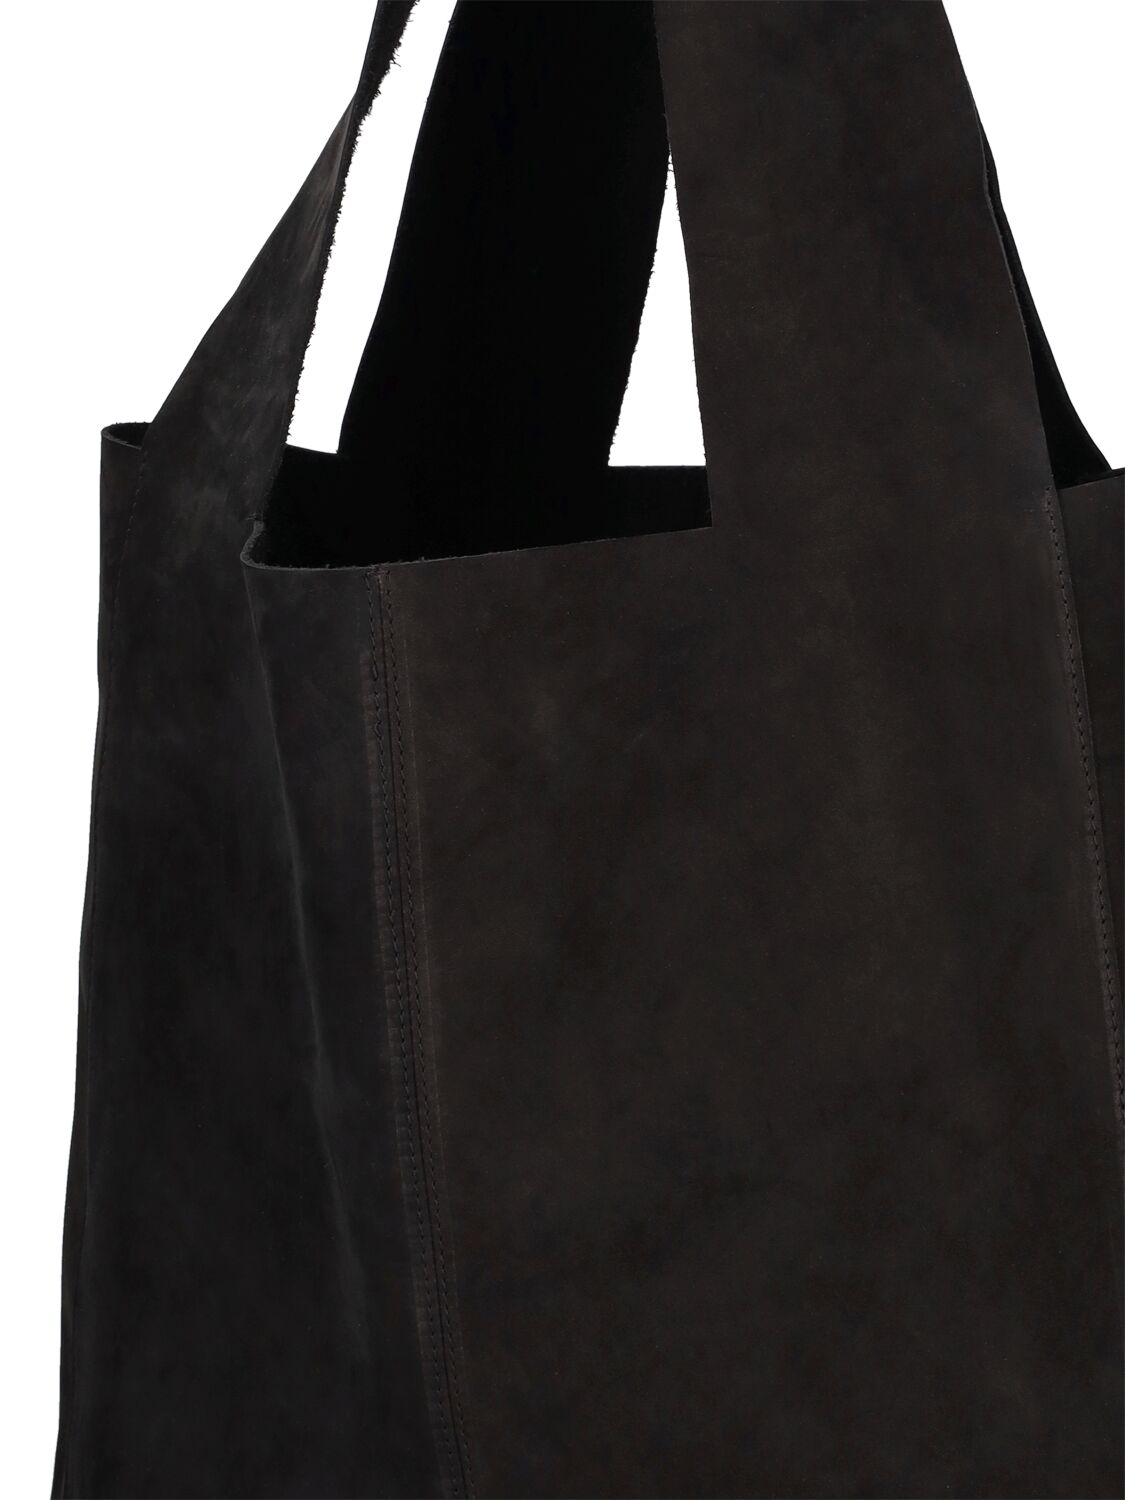 Shop St.agni Soft Suede Tote Bag In Black